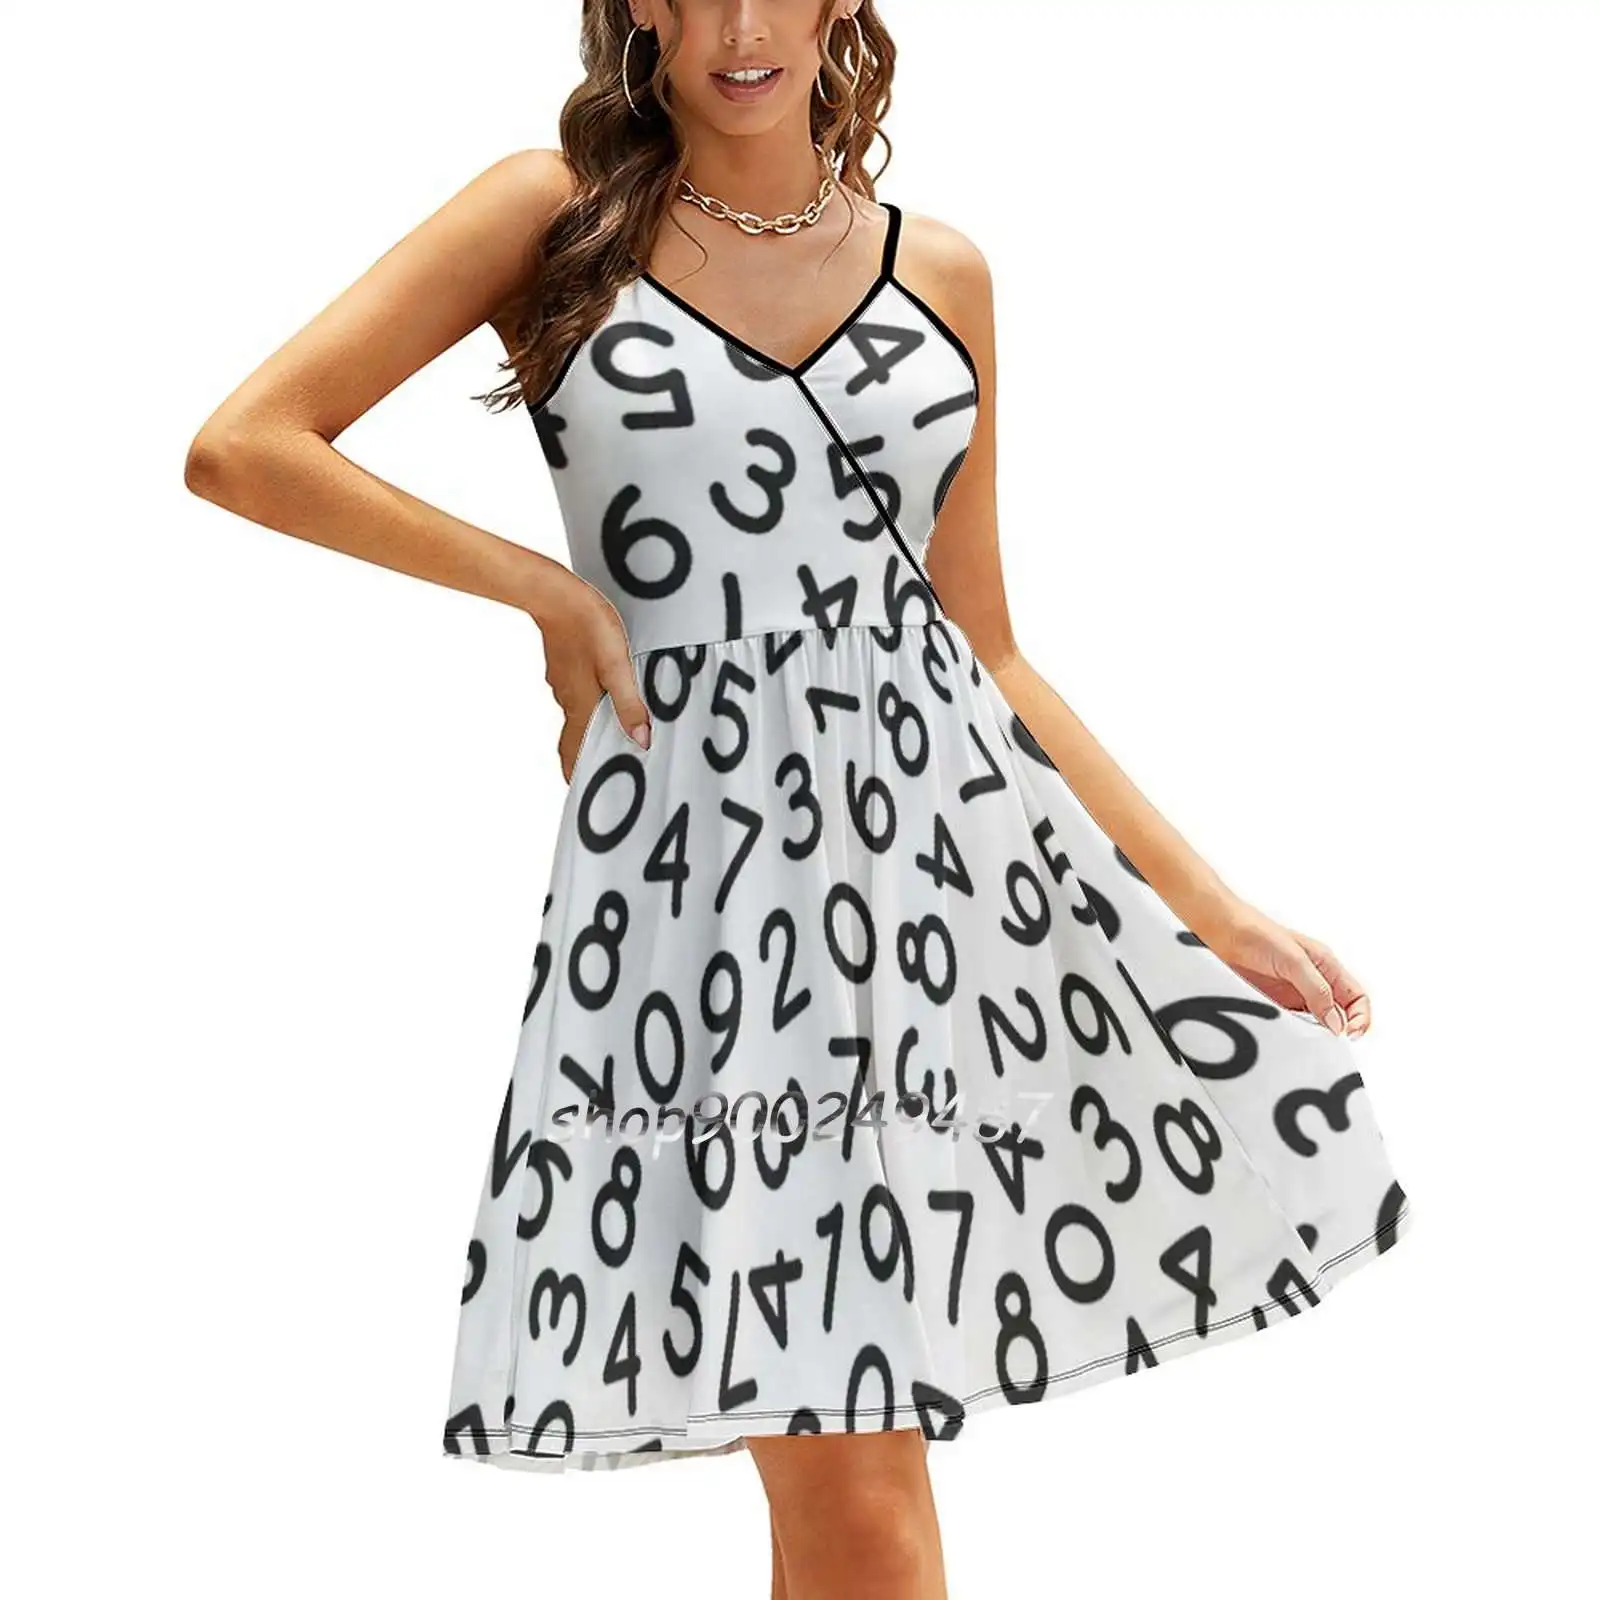 

Летнее платье на бретельках с надписью «I Love математика»